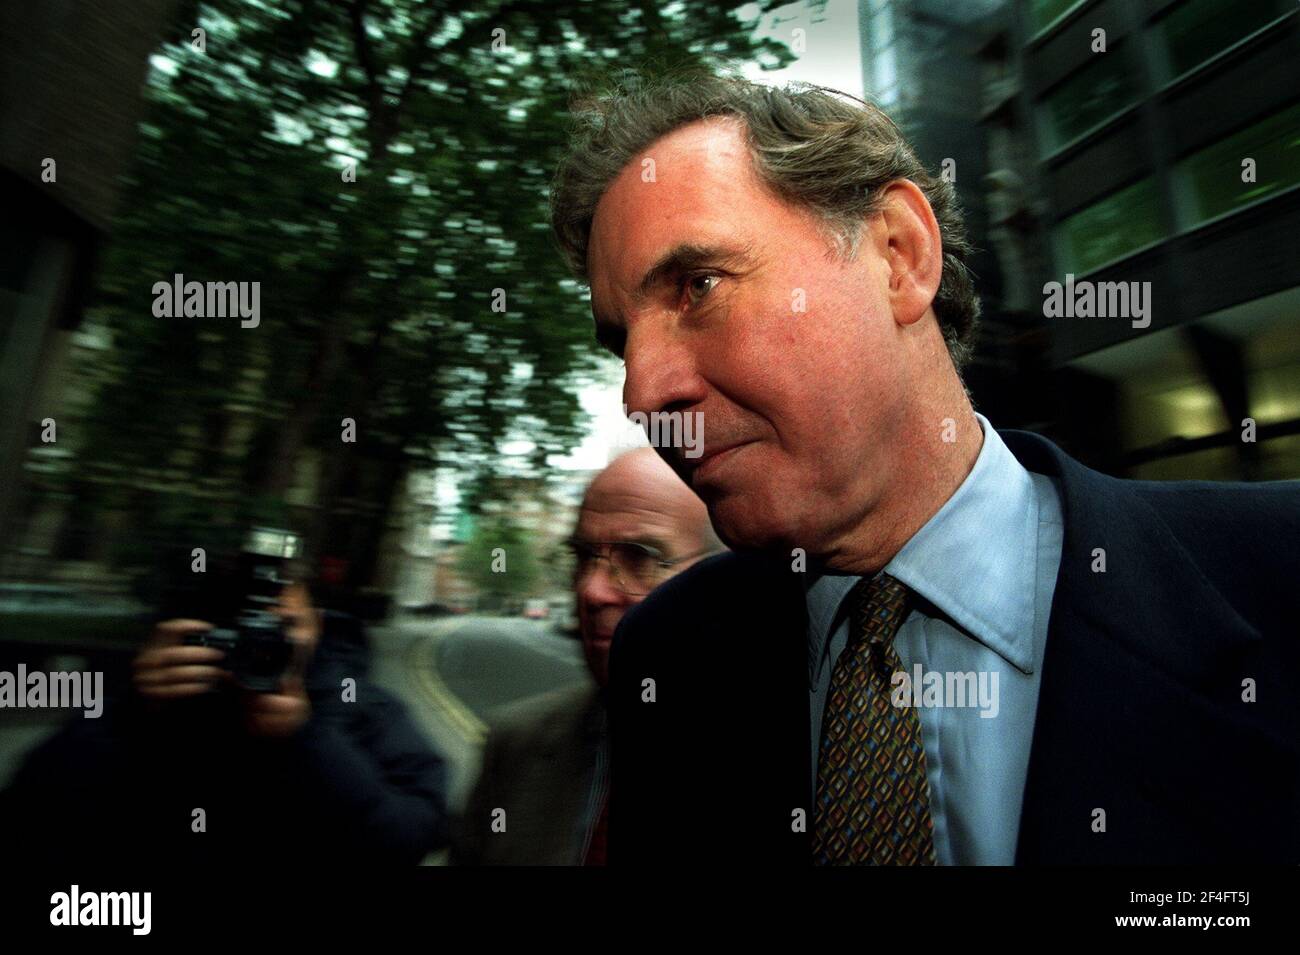 Jonathan Aitken ancien ministre conservateur octobre 1998 à la haute Cour A Londres, face à des accusations de parjure Banque D'Images